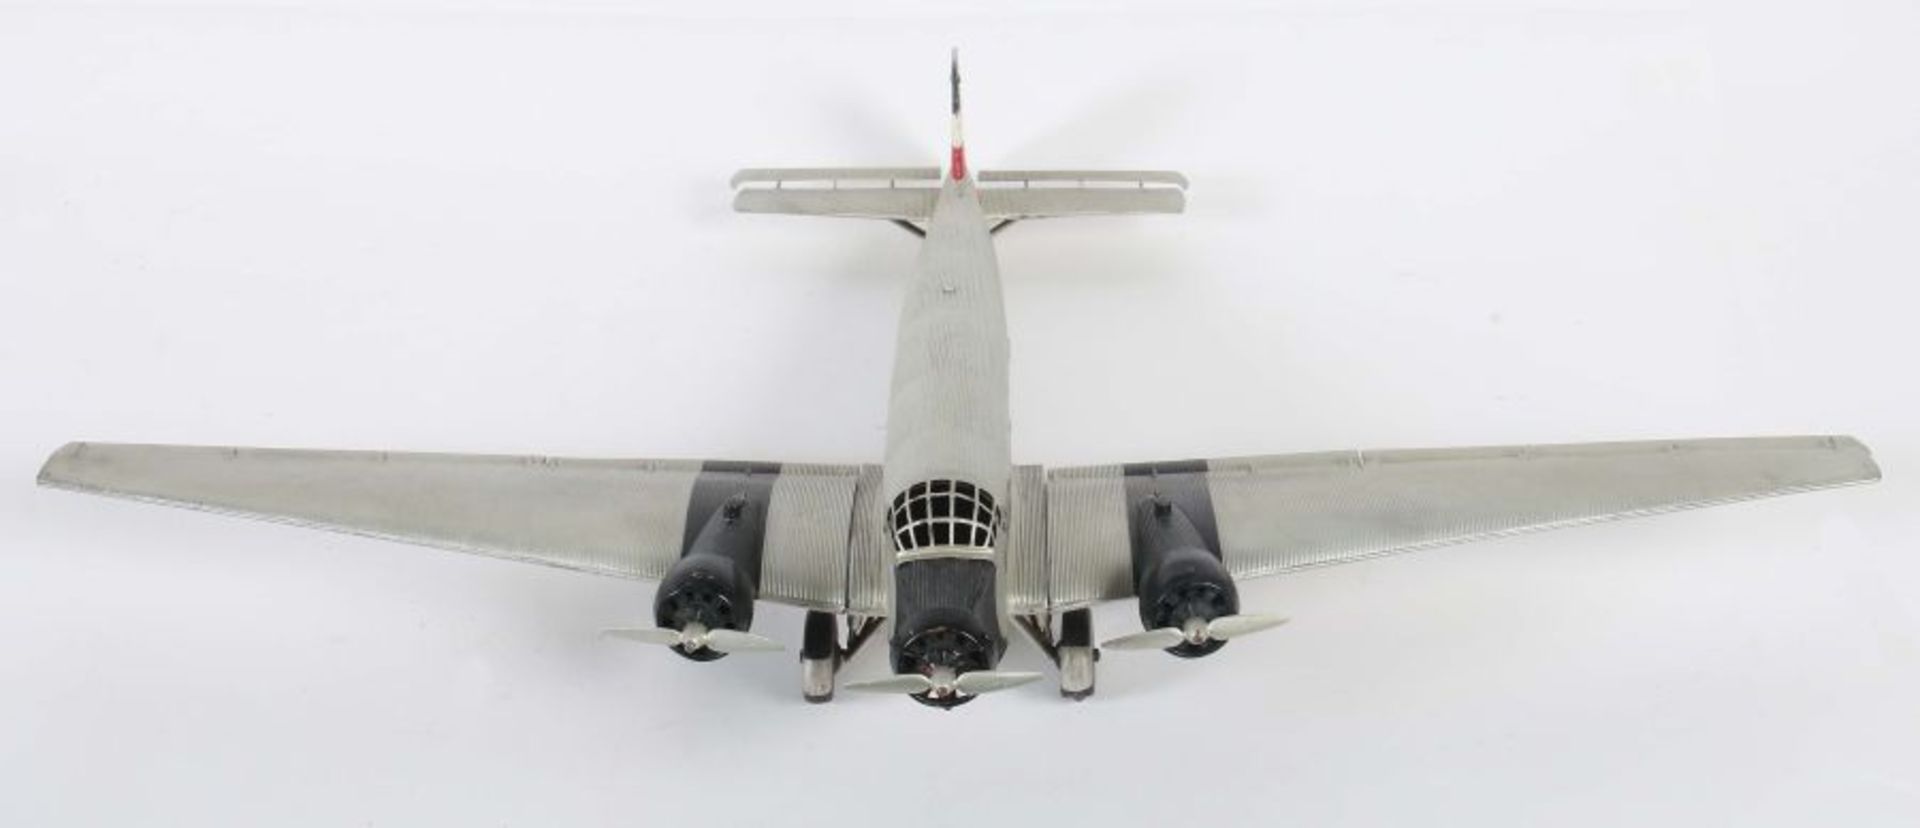 ModellflugzeugMärklin, Junkers "JU 52", histrorisches Reisebüromodell, 3-motorig, Wellblech, - Bild 5 aus 6